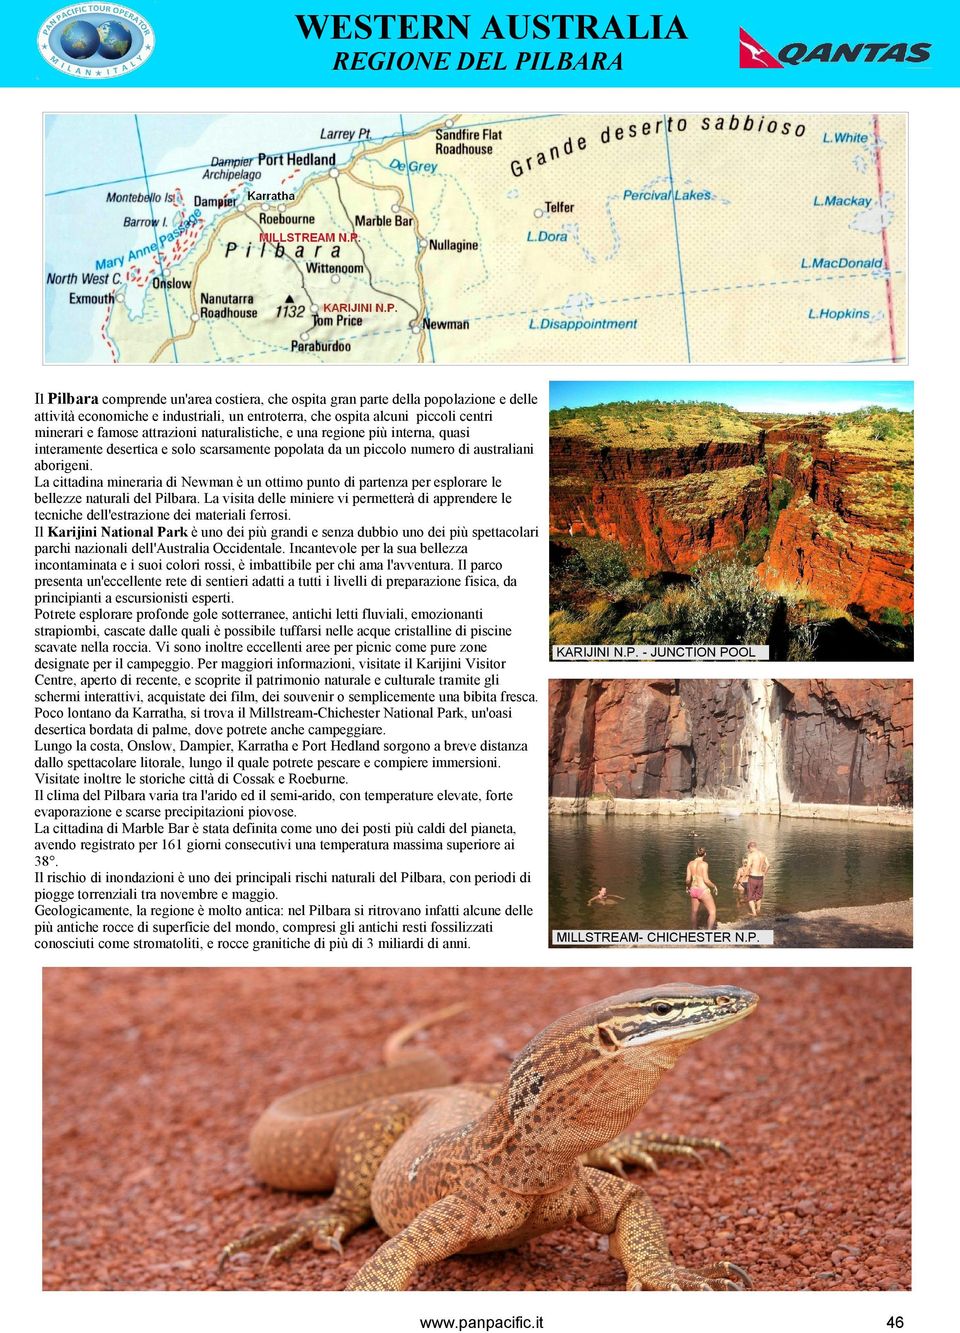 La cittadina mineraria di Newman è un ottimo punto di partenza per esplorare le bellezze naturali del Pilbara.